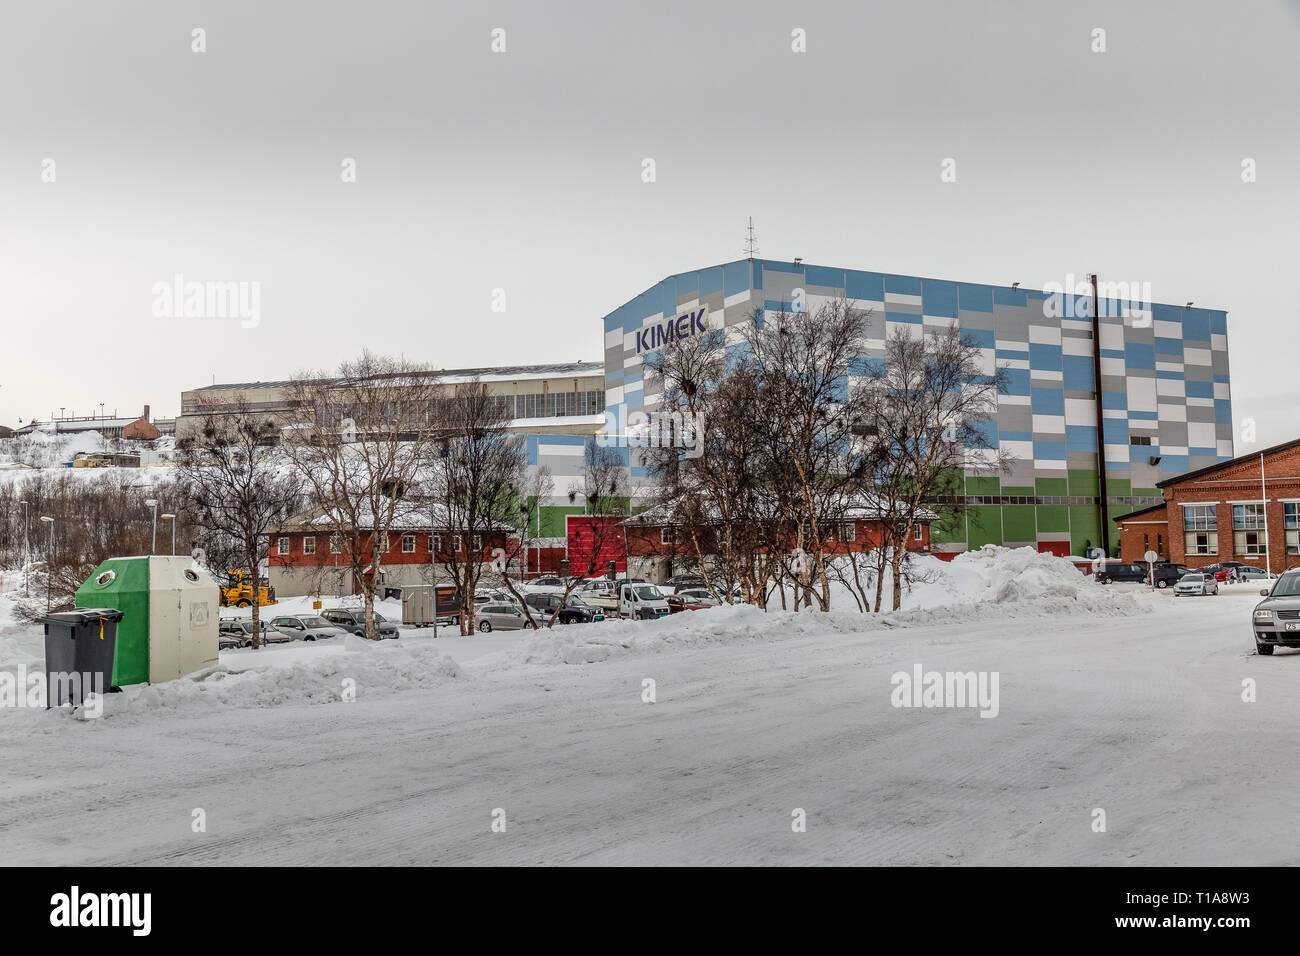 L'Kimek chantier naval de la ville de Kirkenes en Norvège. Banque D'Images